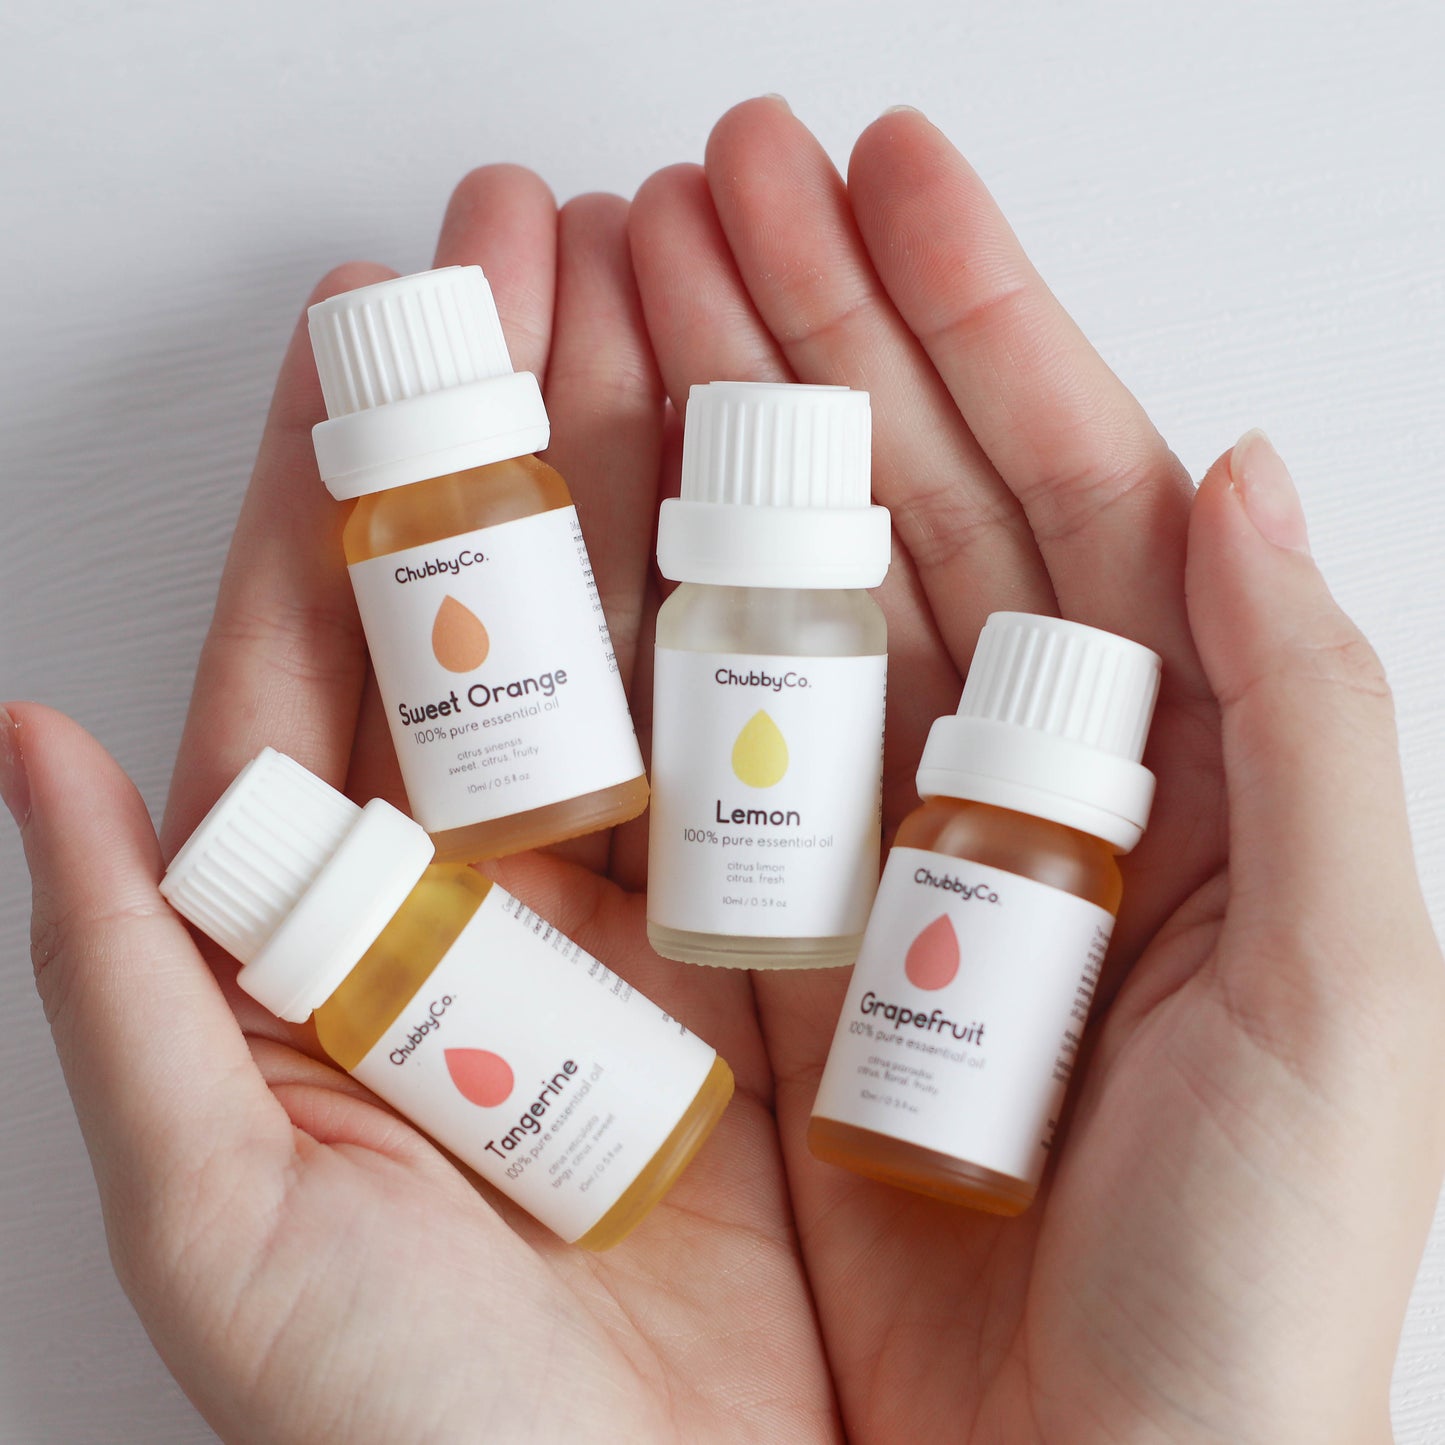 Sweet Orange Essential Oil - ChubbyCo. - Essential Oil Aromatherapy Singapore